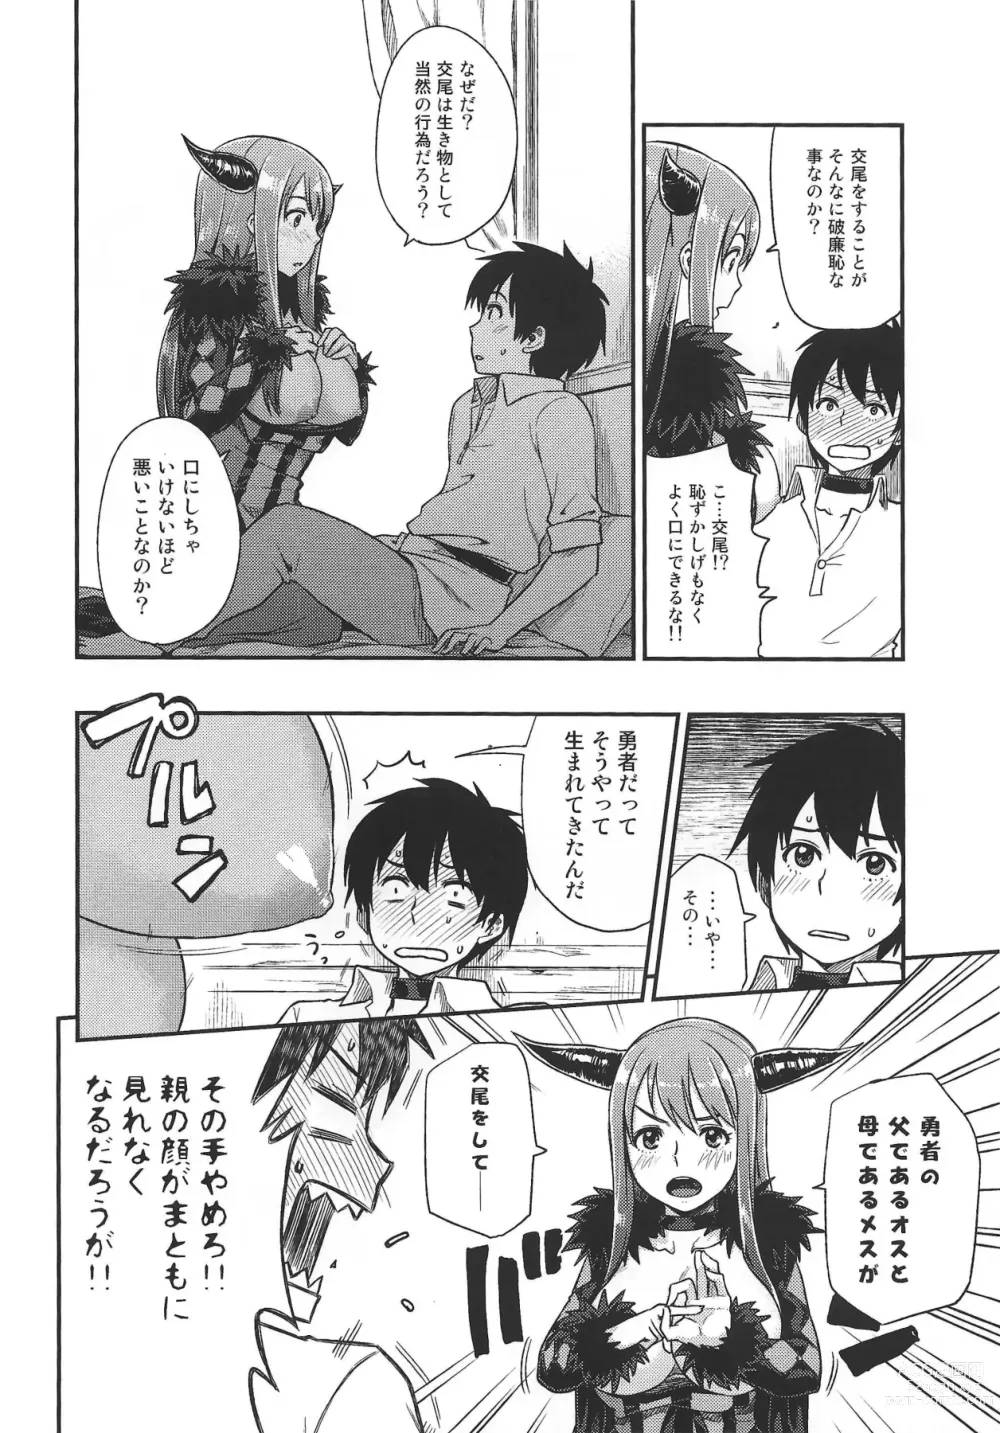 Page 3 of doujinshi Muchiroku 2013 Natsu